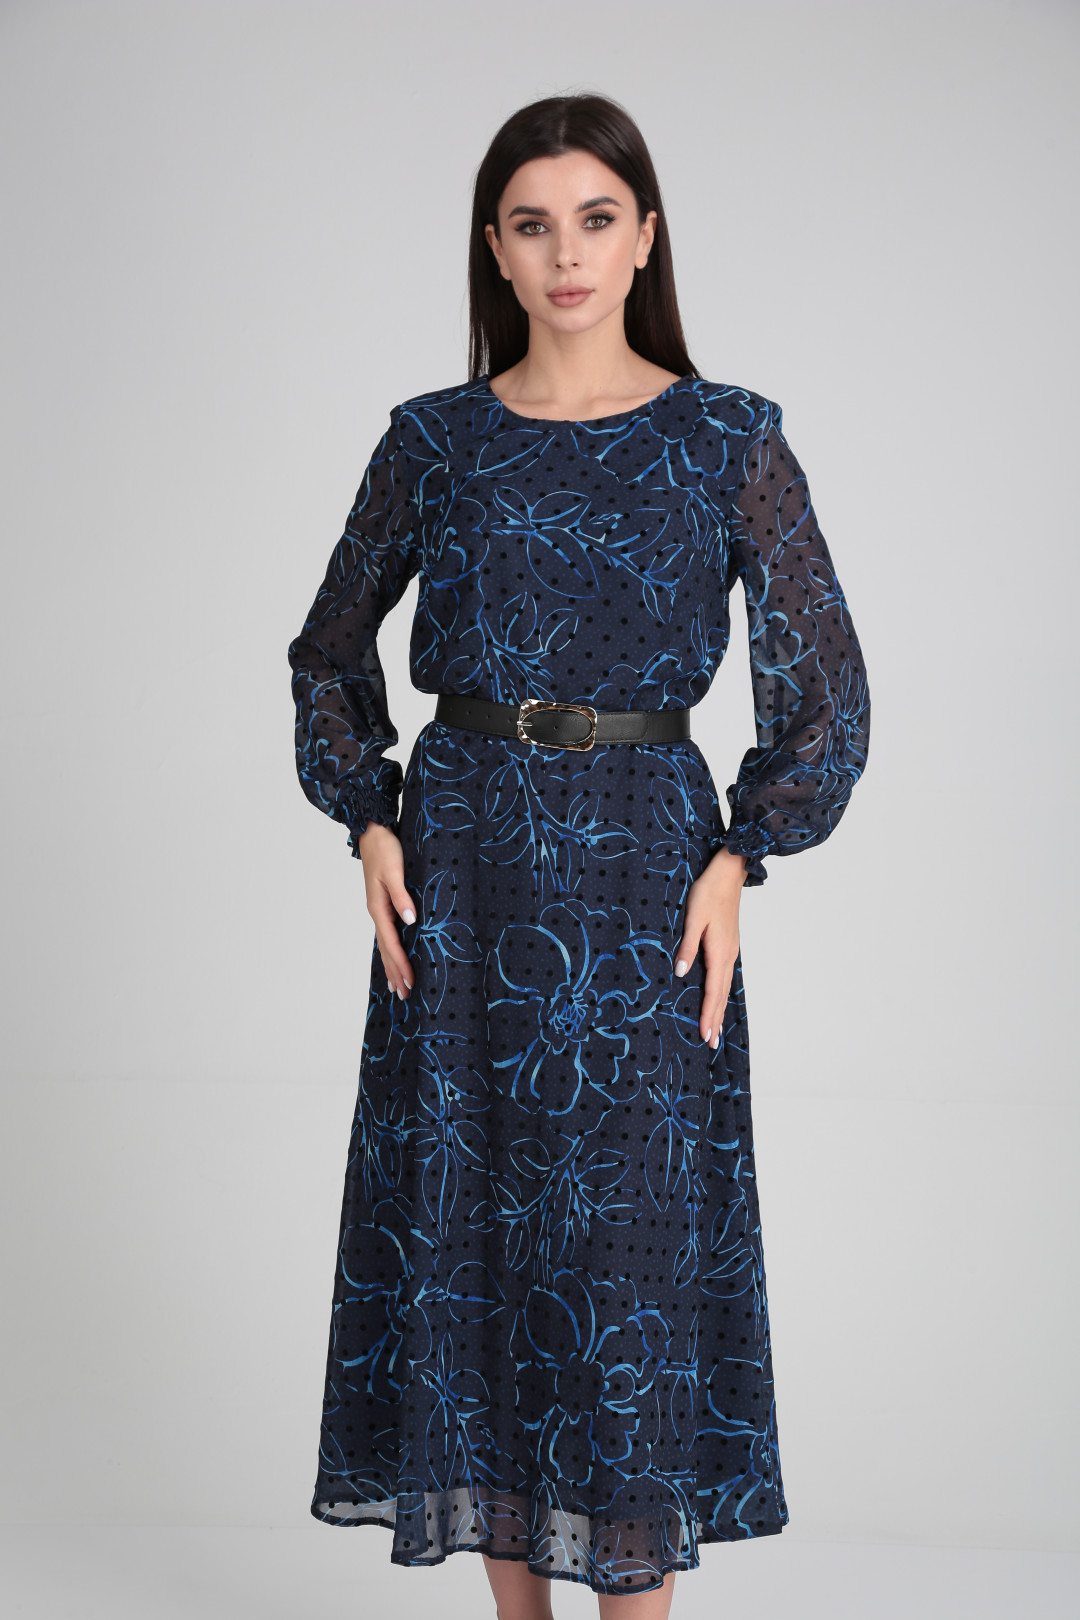 Платье Мода-Версаль 2360 васильковый